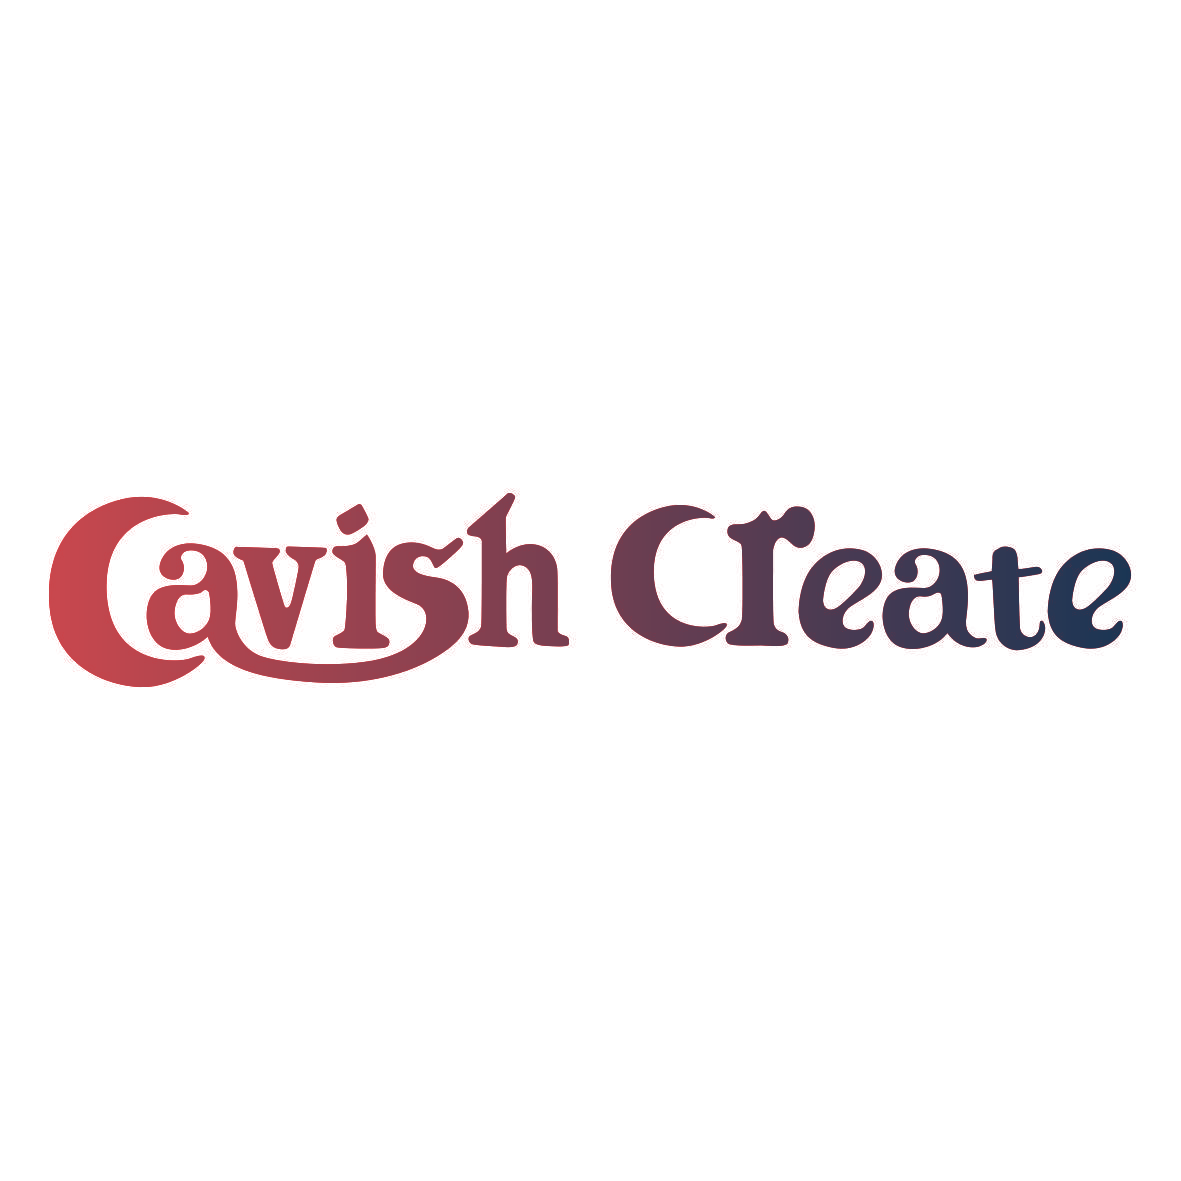 CAVISH CREATE